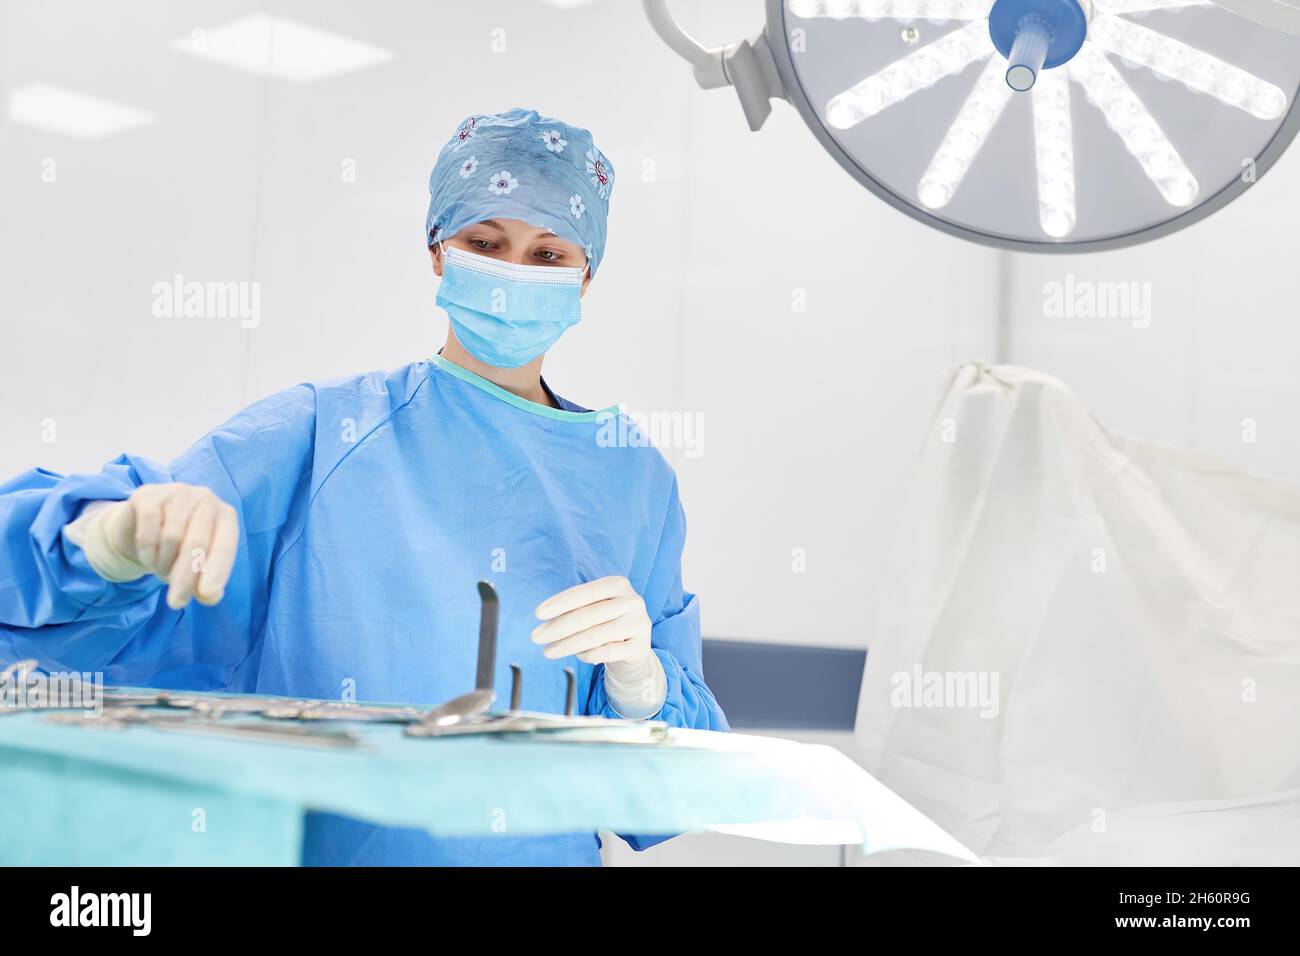 Enfermera quirúrgica o médico con instrumentos quirúrgicos estériles que se preparan para la operación Foto de stock